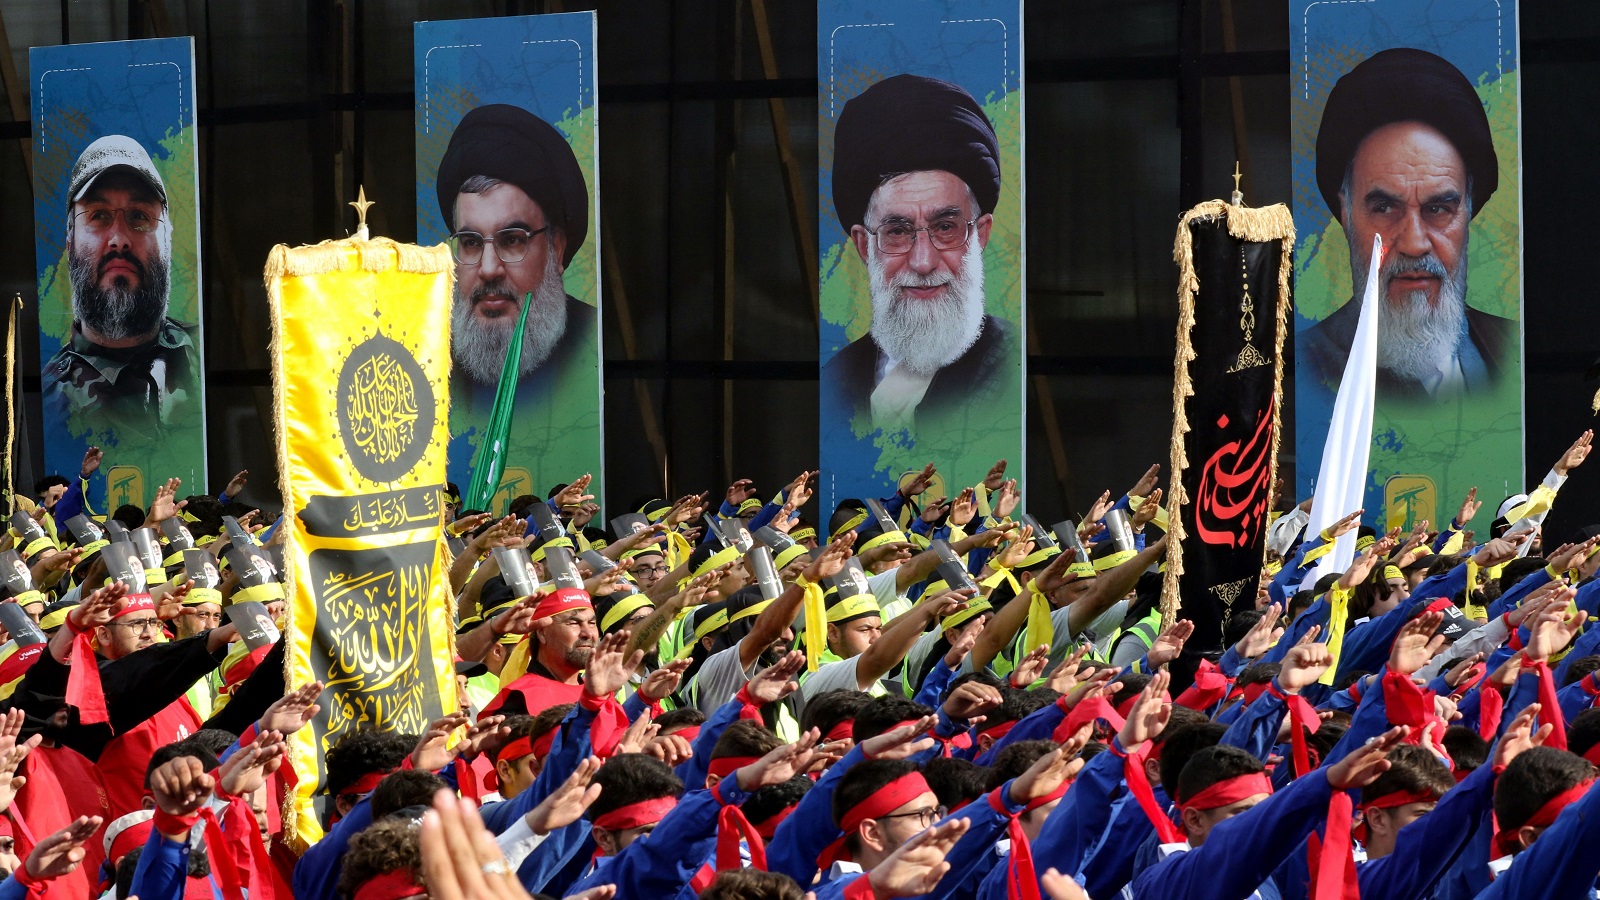 أحداث بغداد ستصل أصداؤها إلى بيروت: معركة نفوذ إيران